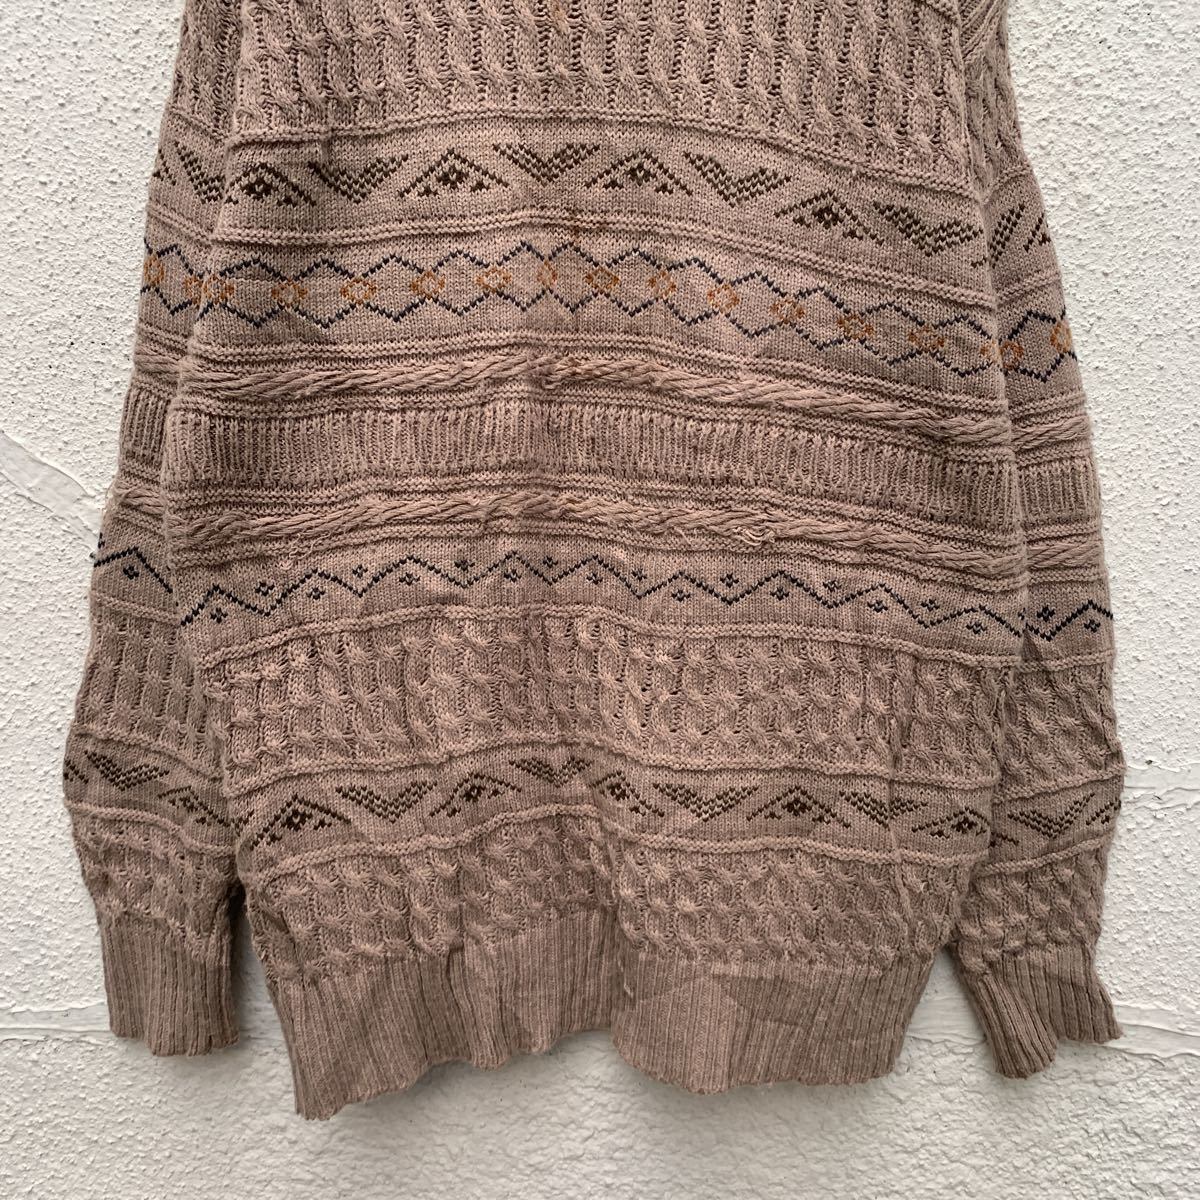 TARGETのセーター(L)!。